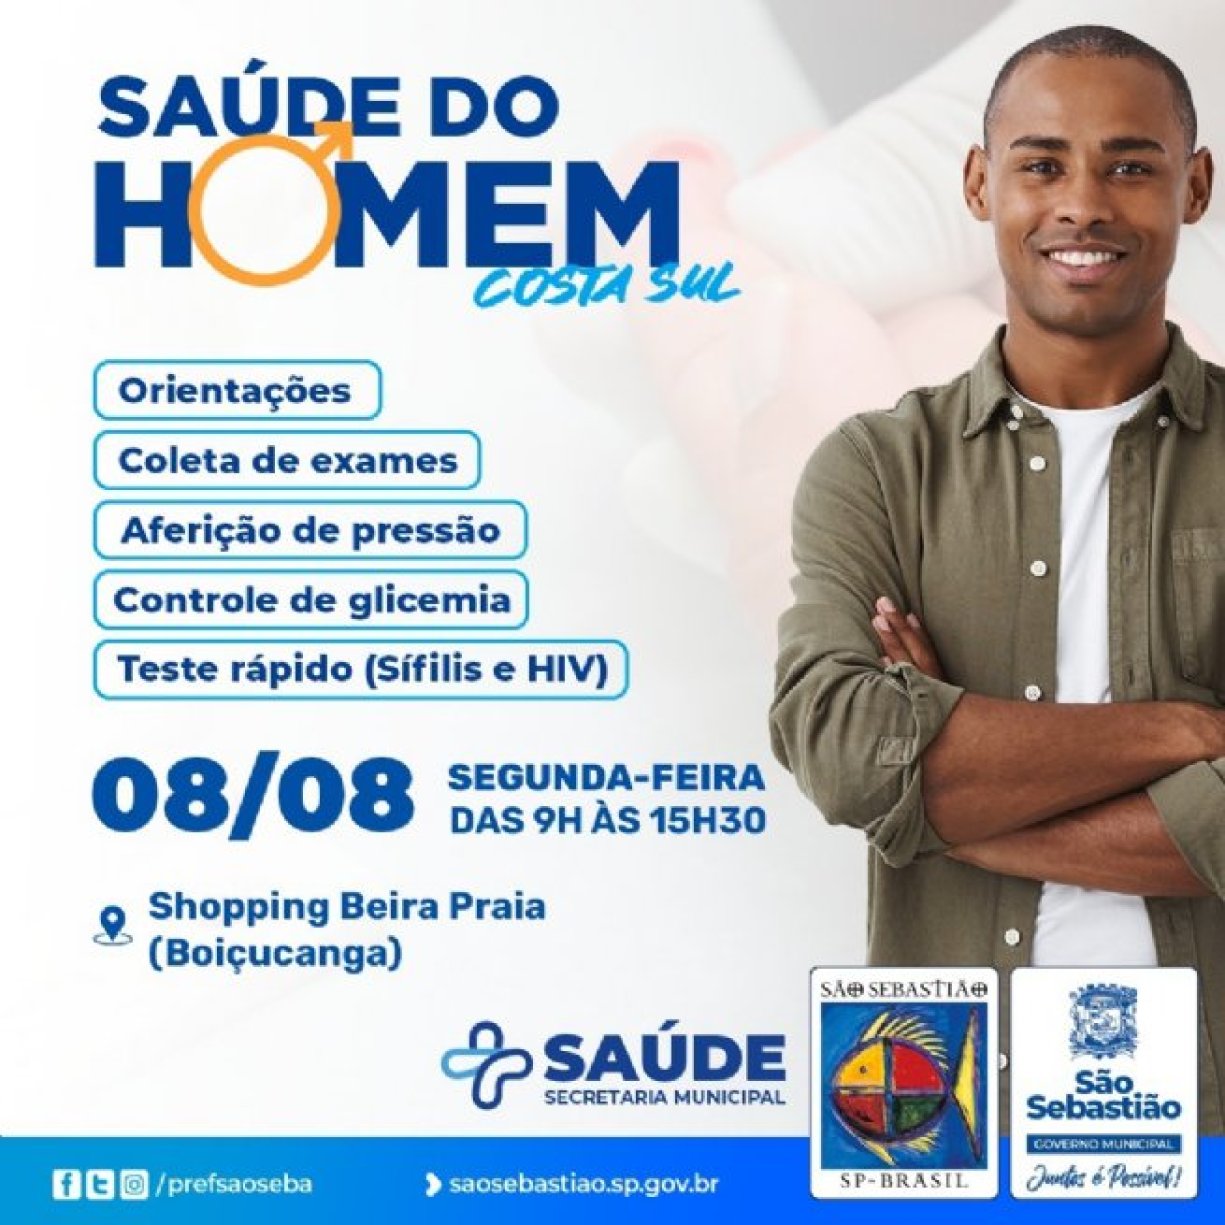 Prefeitura realiza evento de promoção à Saúde do Homem nesta segunda-feira (8) no Shopping Beira Praia, em Boiçucanga